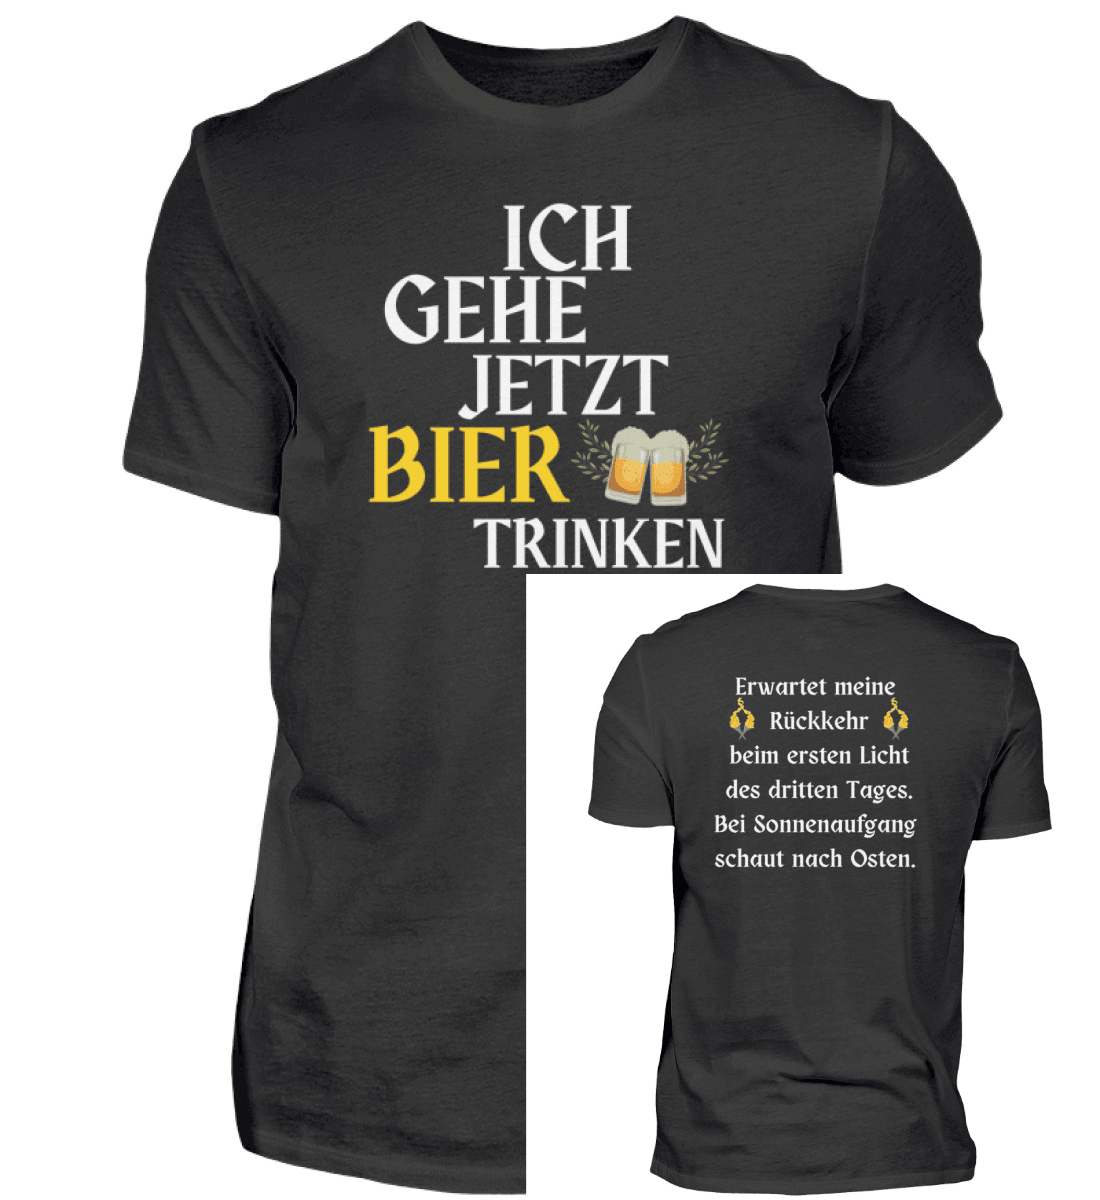 BIER TRINKEN  - Herren Shirt